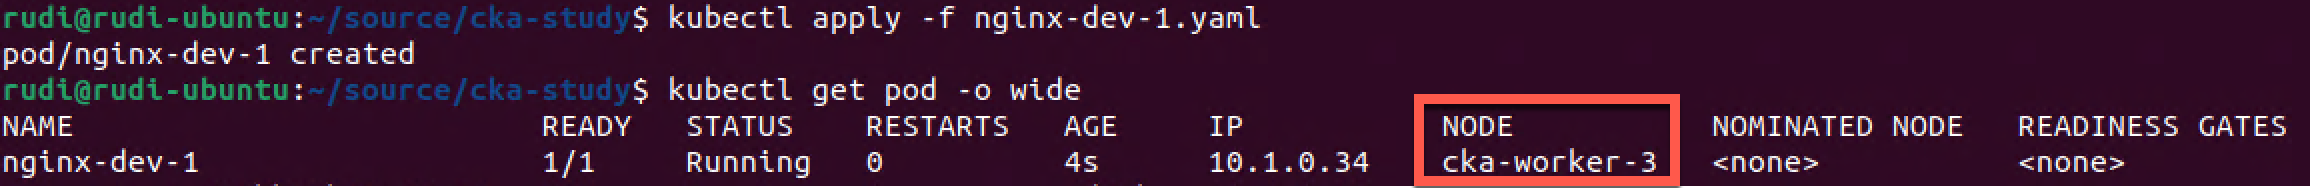 Dev pod scheduled on dev labeled node